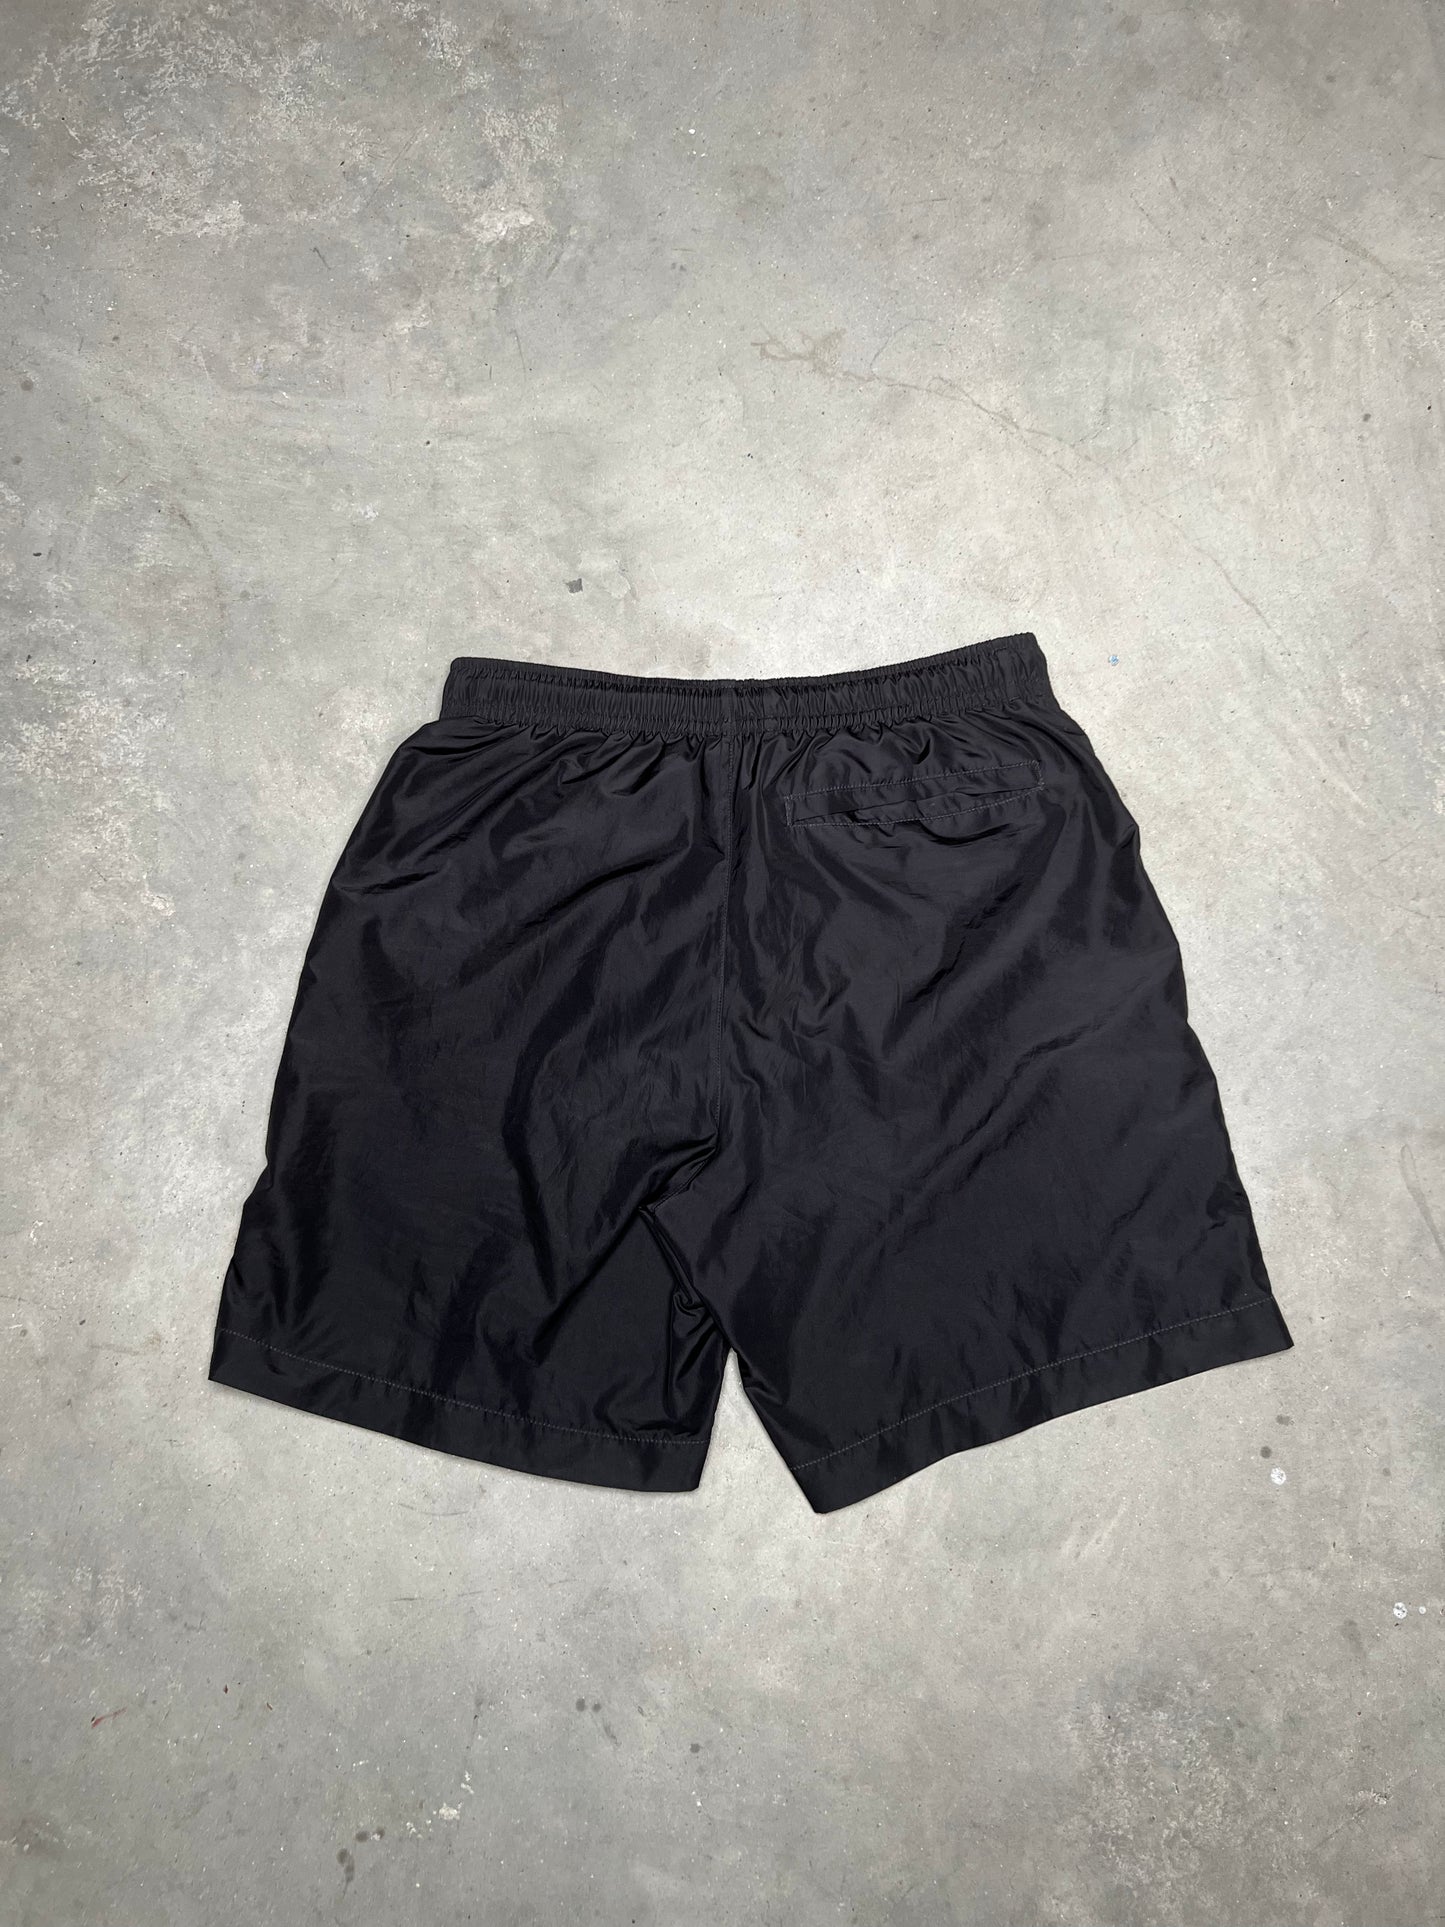 Givenchy Chito Graffiti Swim Shorts